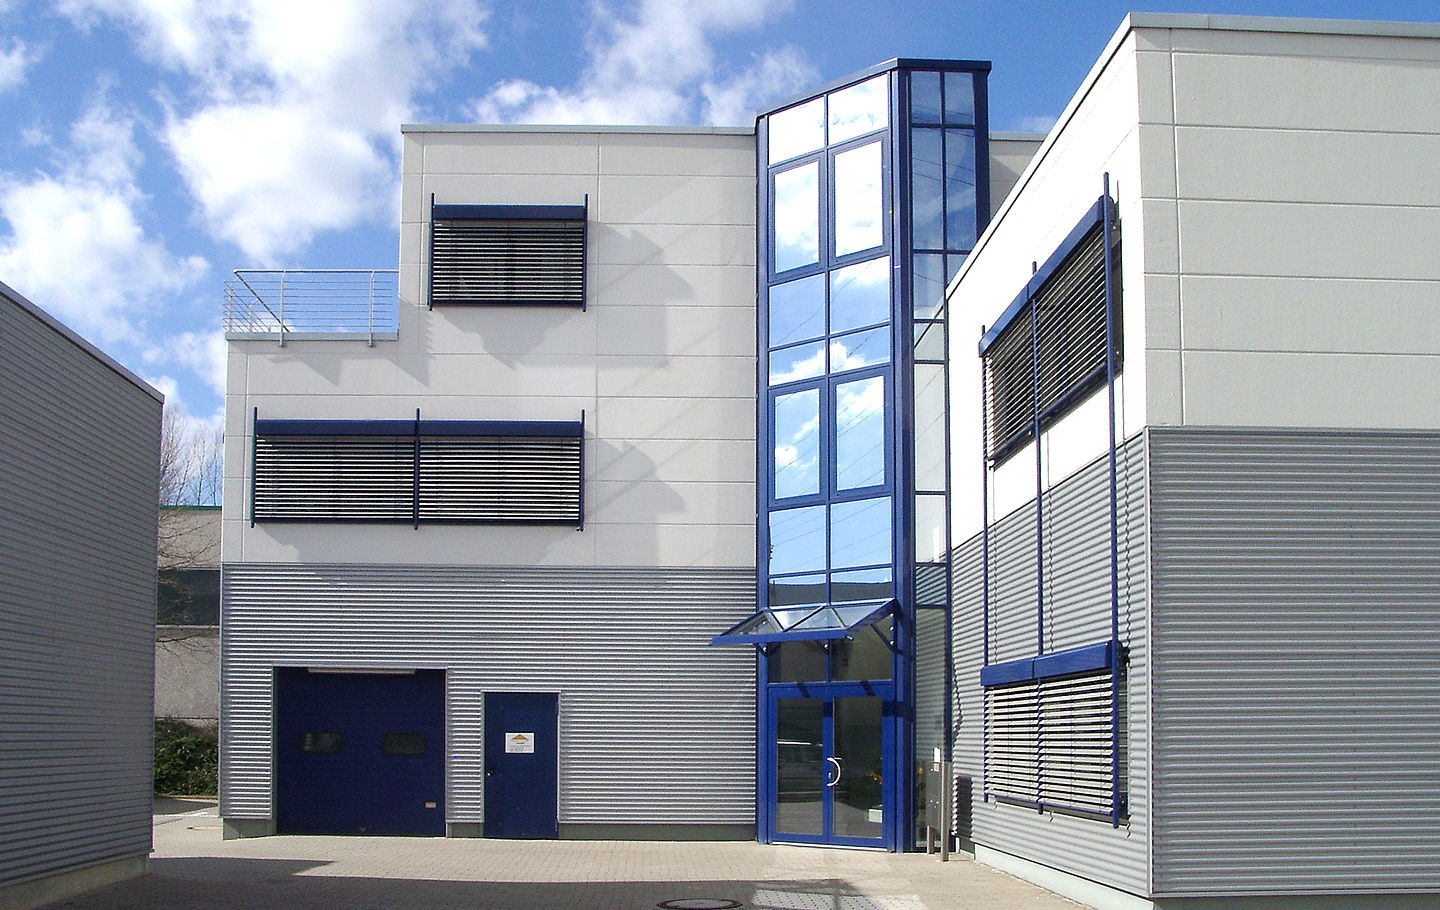 Pfosten-Riegel-Fassade in Kombination mit Porenbetonwandplatten bei einem Neubau von Schreiber Stahlbau